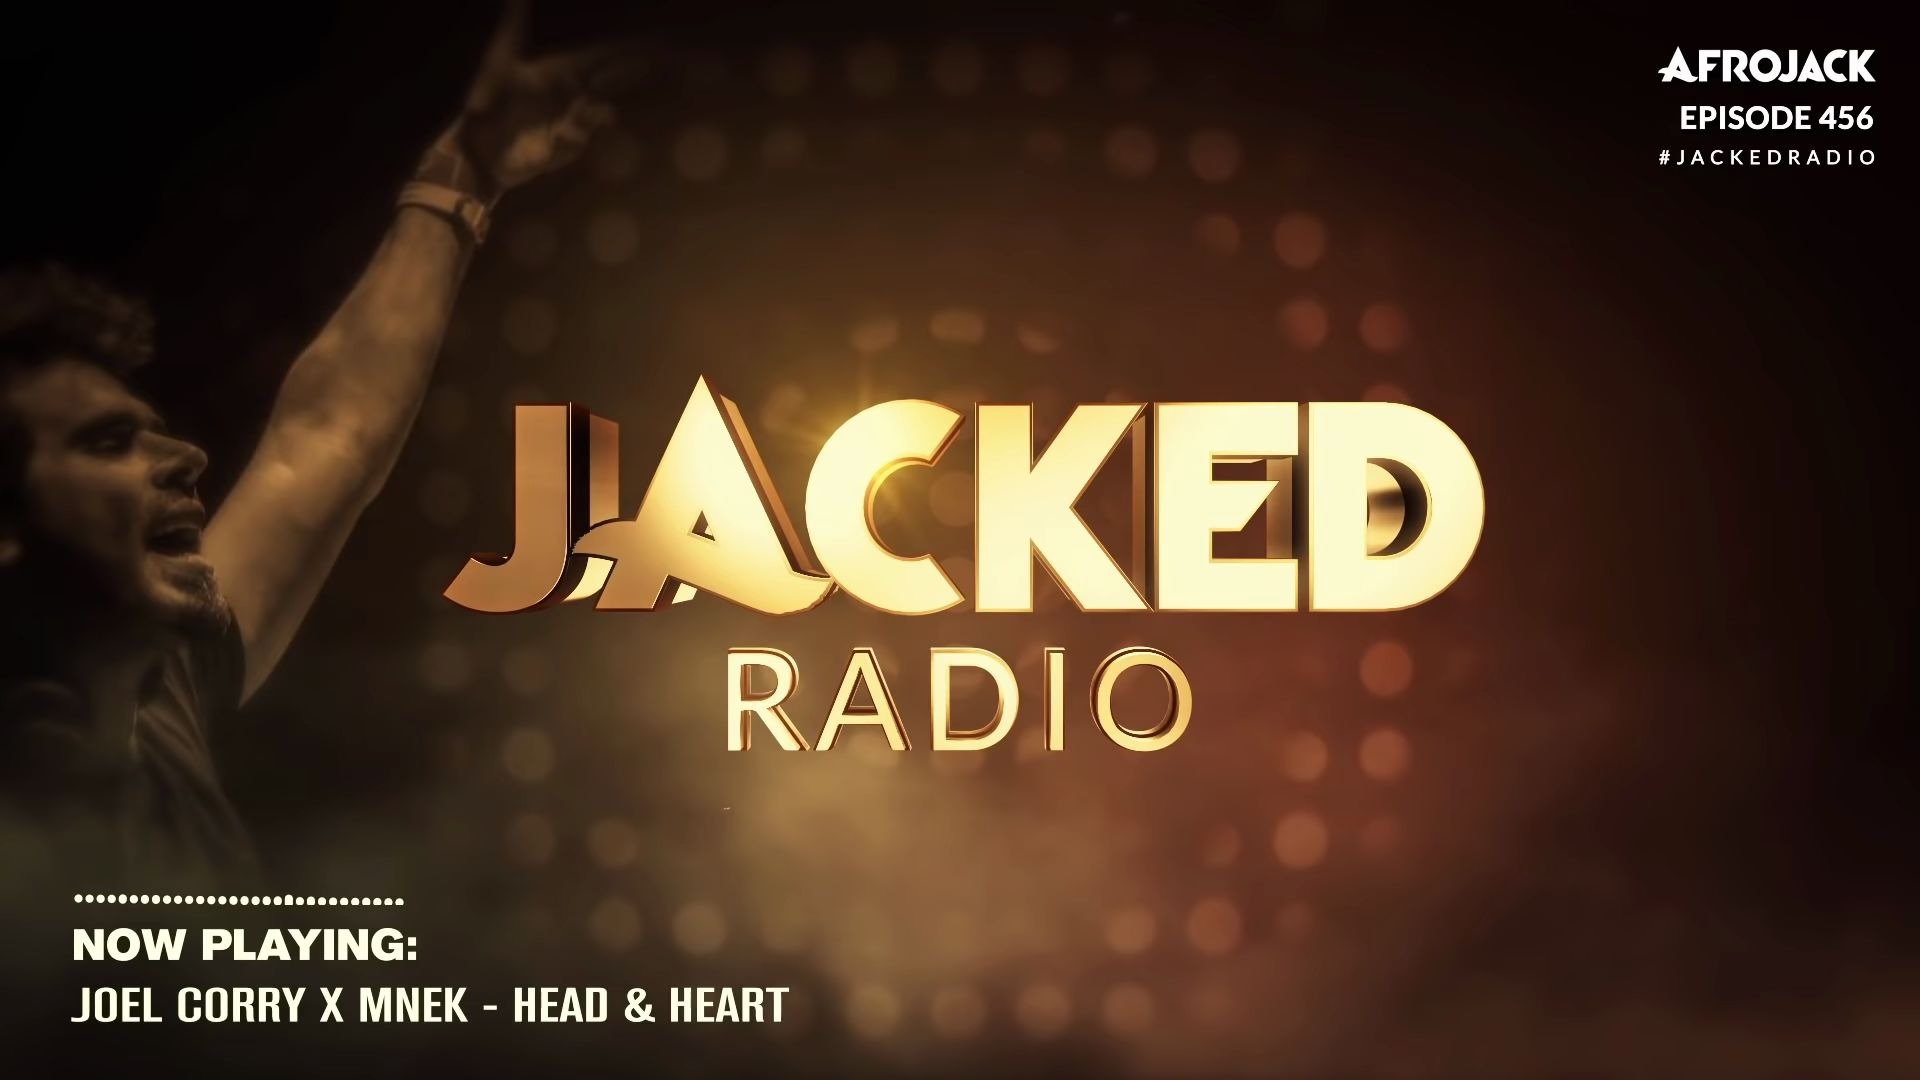 Jacked Radio 456 by Afrojack